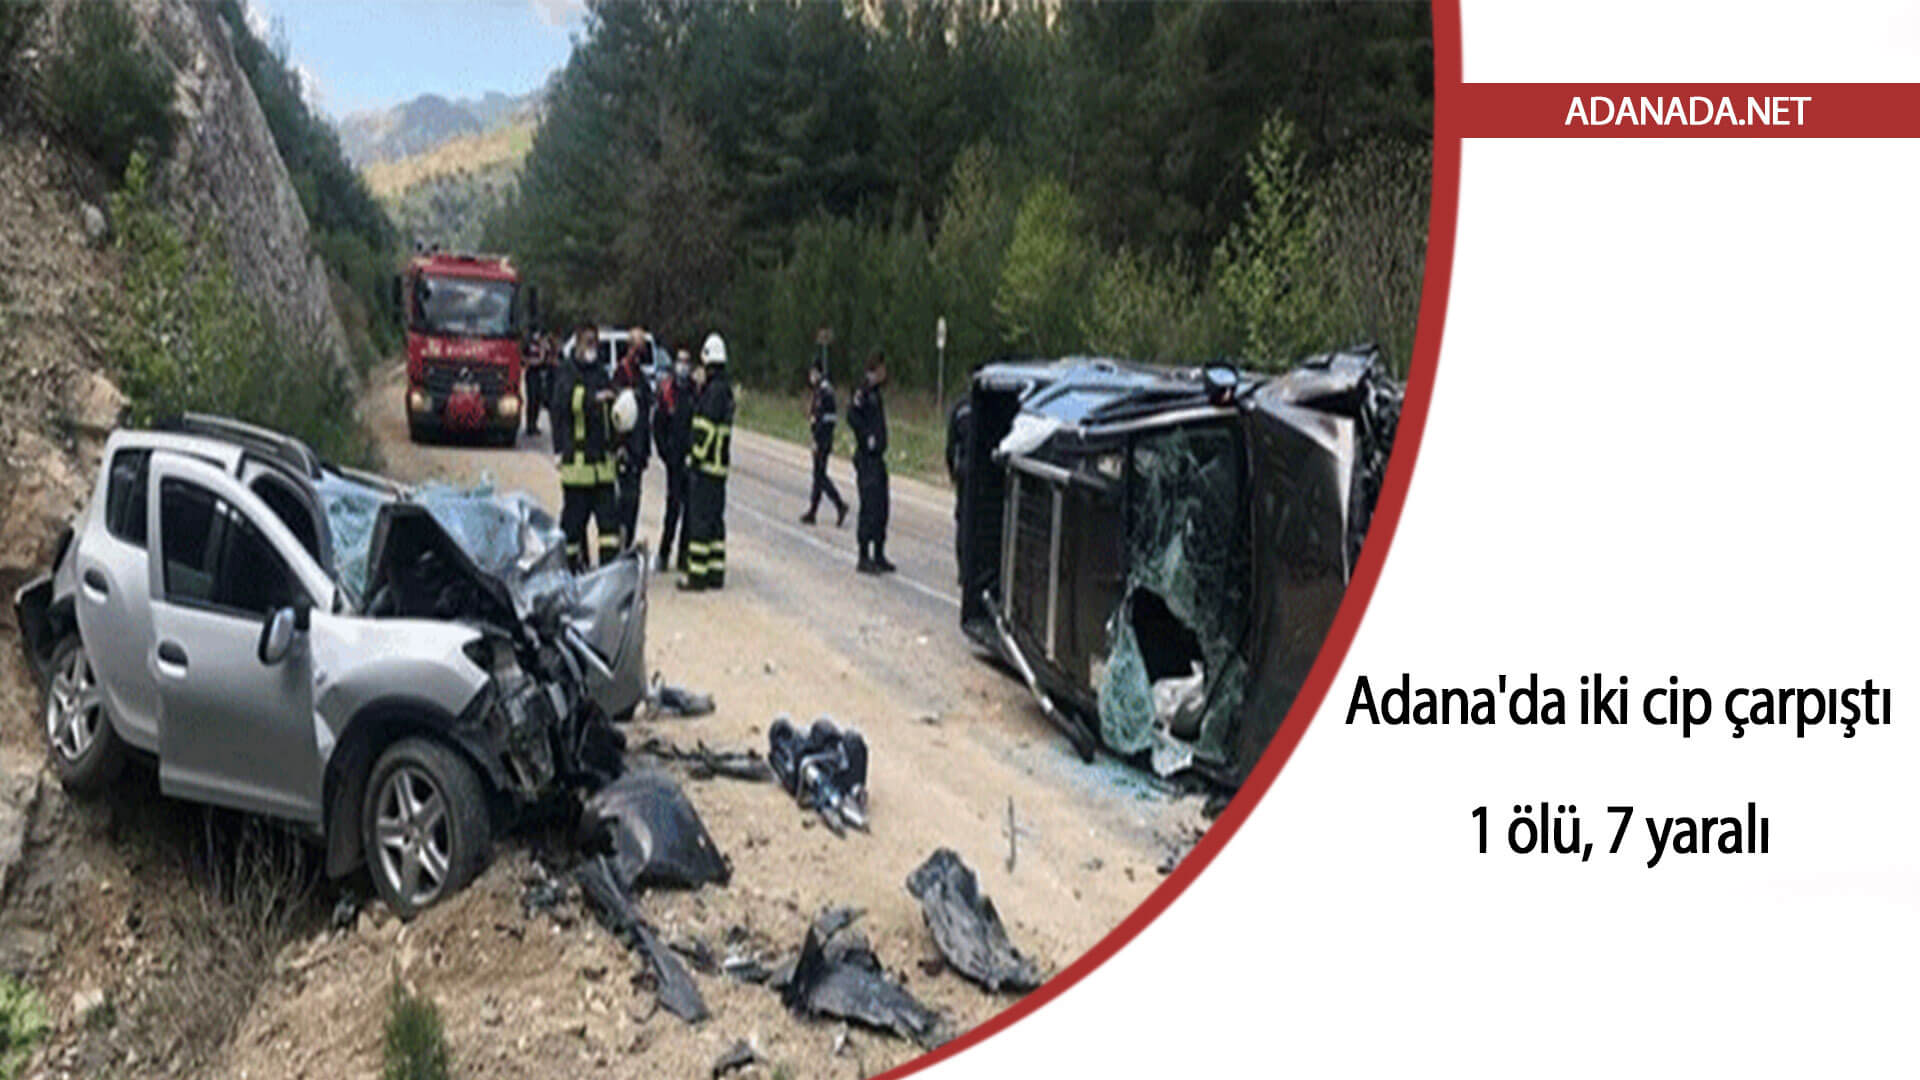 Adana’da iki cip çarpıştı: 1 ölü, 7 yaralı